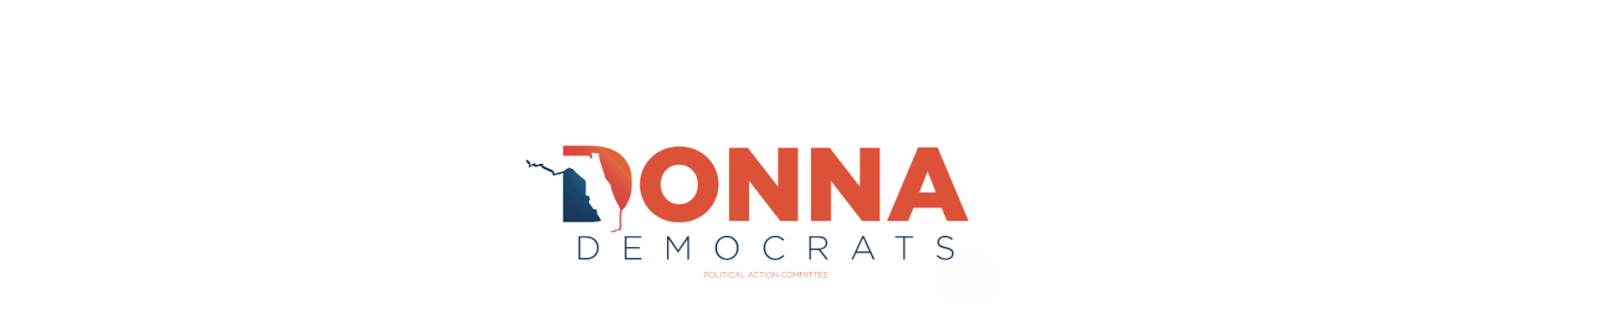 Donna Democrats